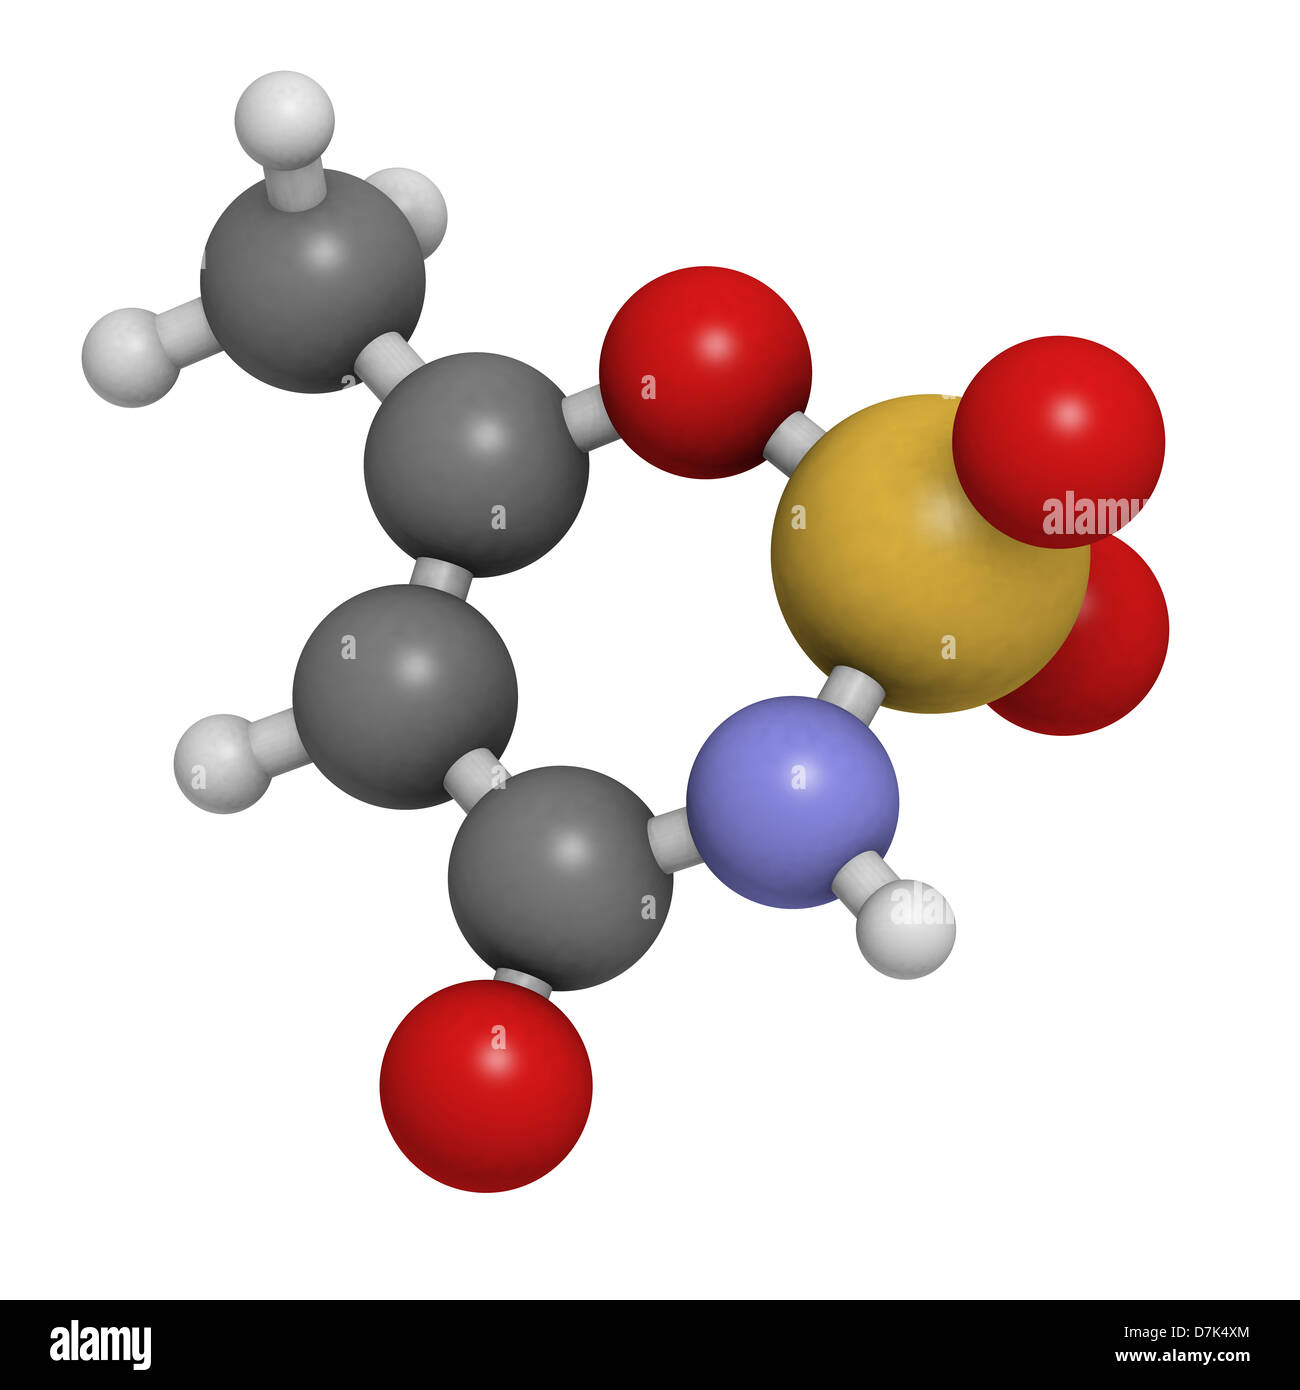 Acesulfam Süßstoff, Molekülmodell. Acesulfam wird hauptsächlich als seine  Kaliumsalz (Acesulfam-K) verwendet Stockfotografie - Alamy